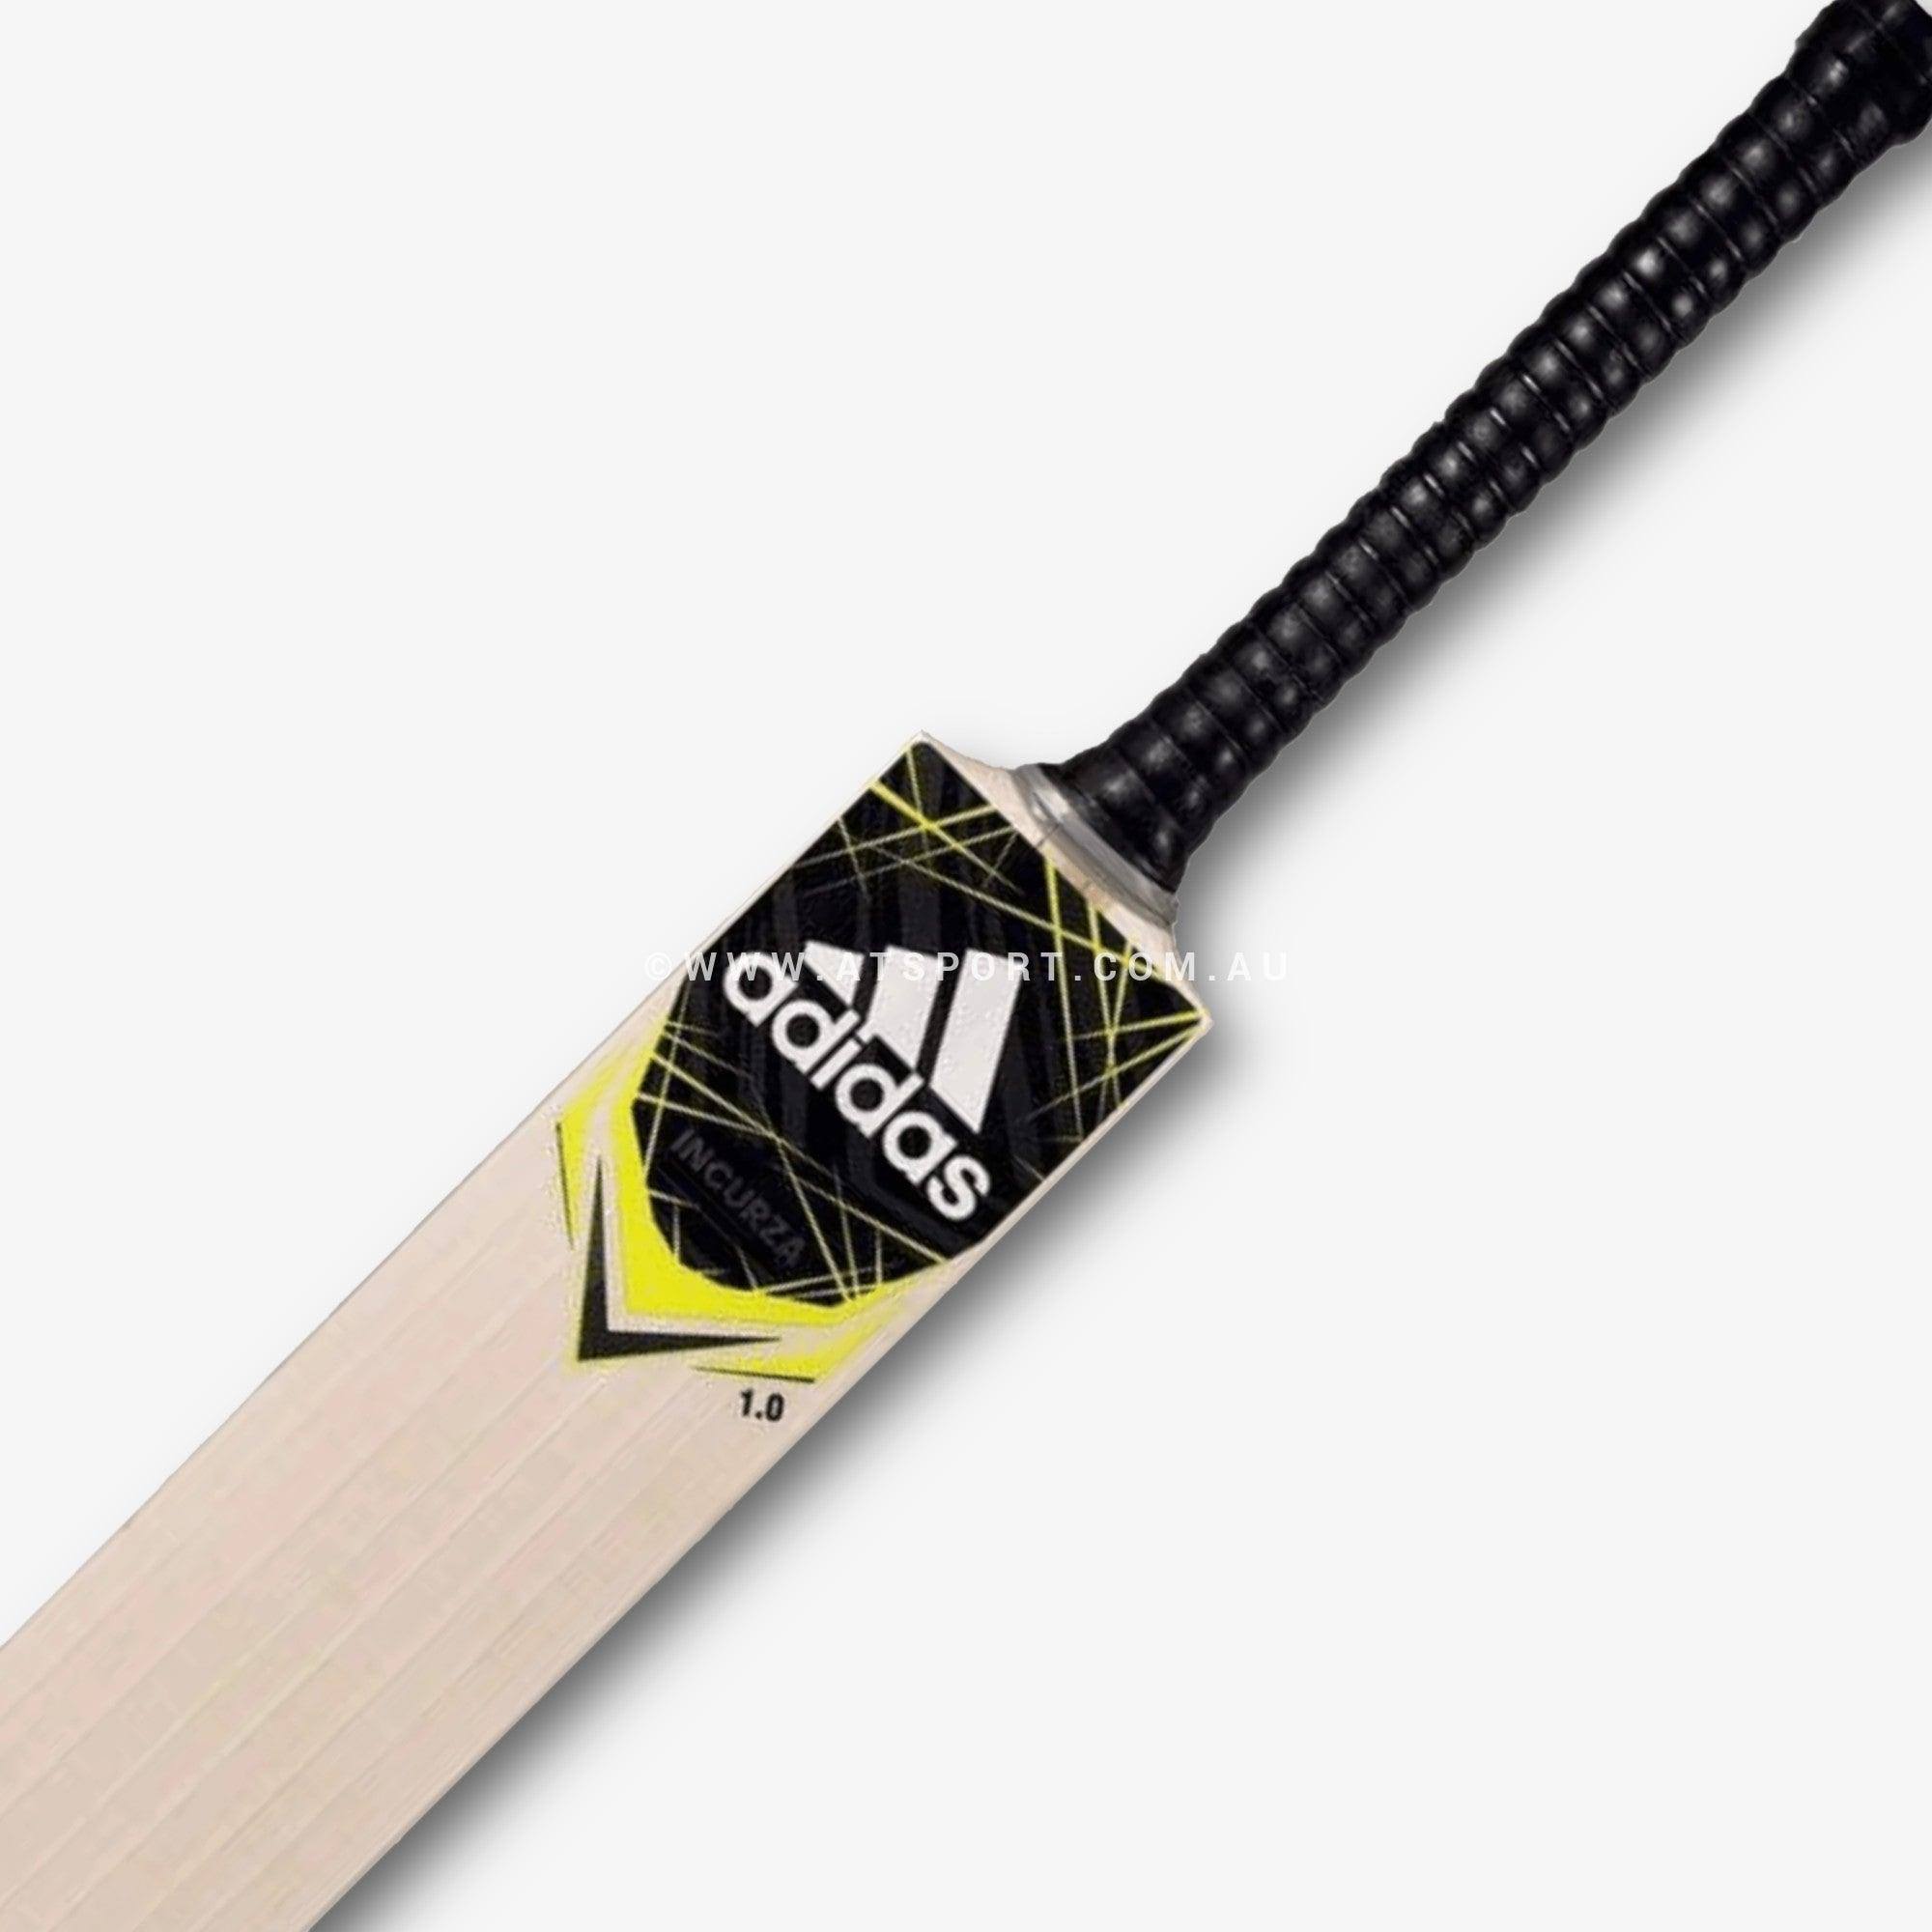 Adidas Incurza 5.0 English Willow Cricket Bat - SH - AT Sports